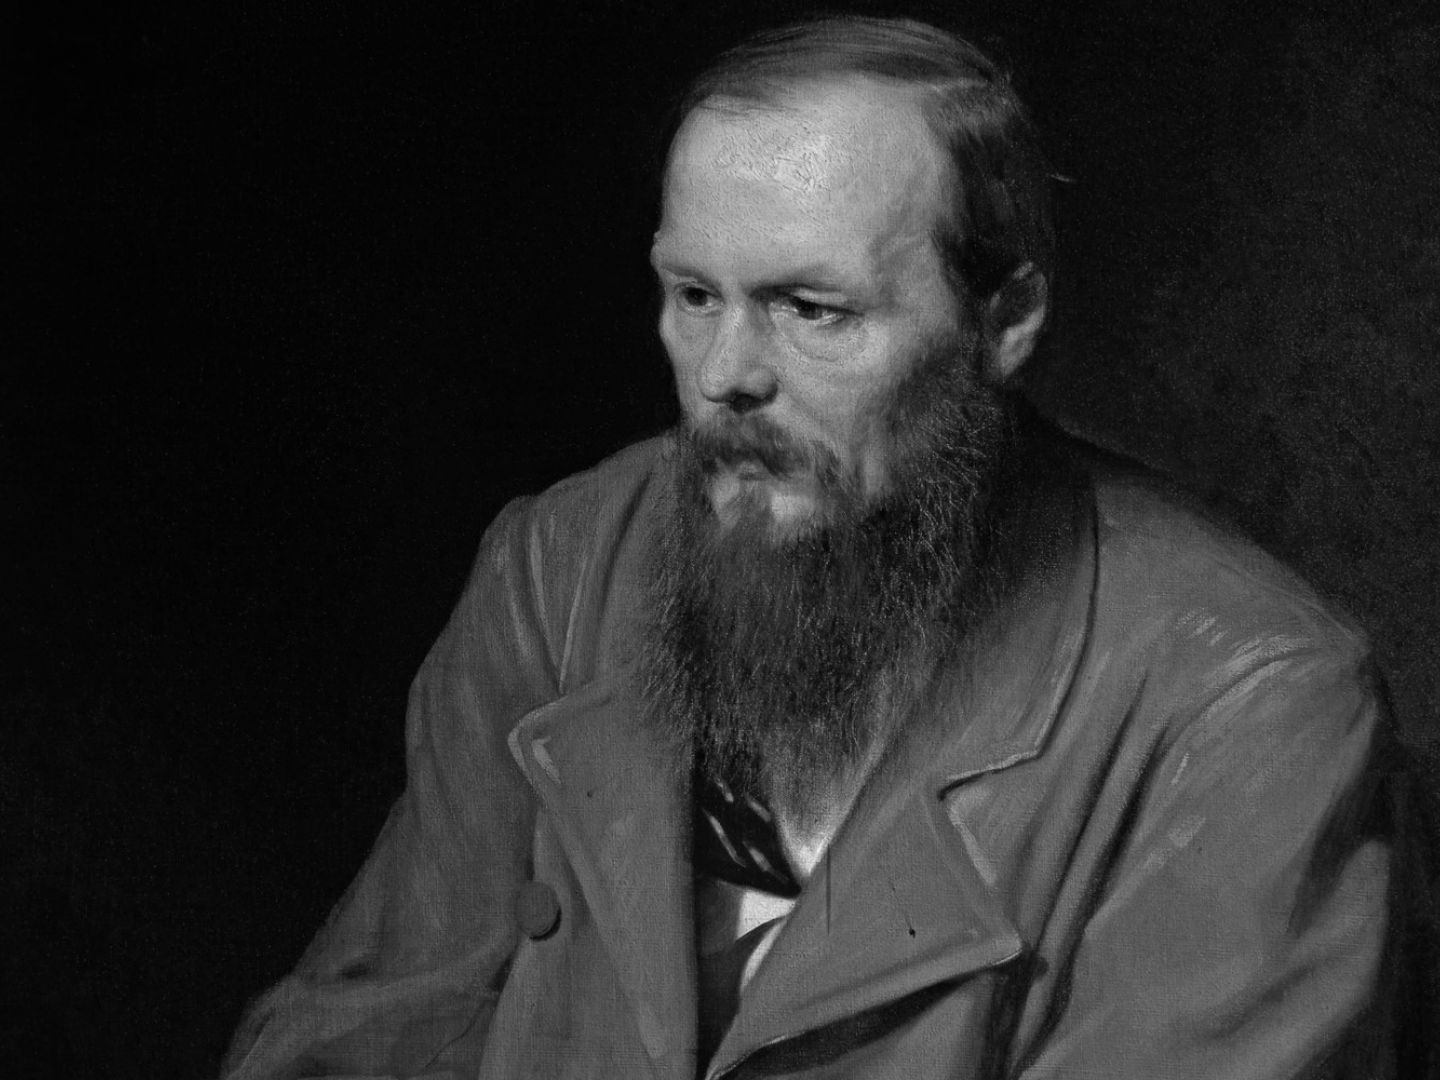 Ein Portrait in schwarz weiß von Fjodor Dostojewskij